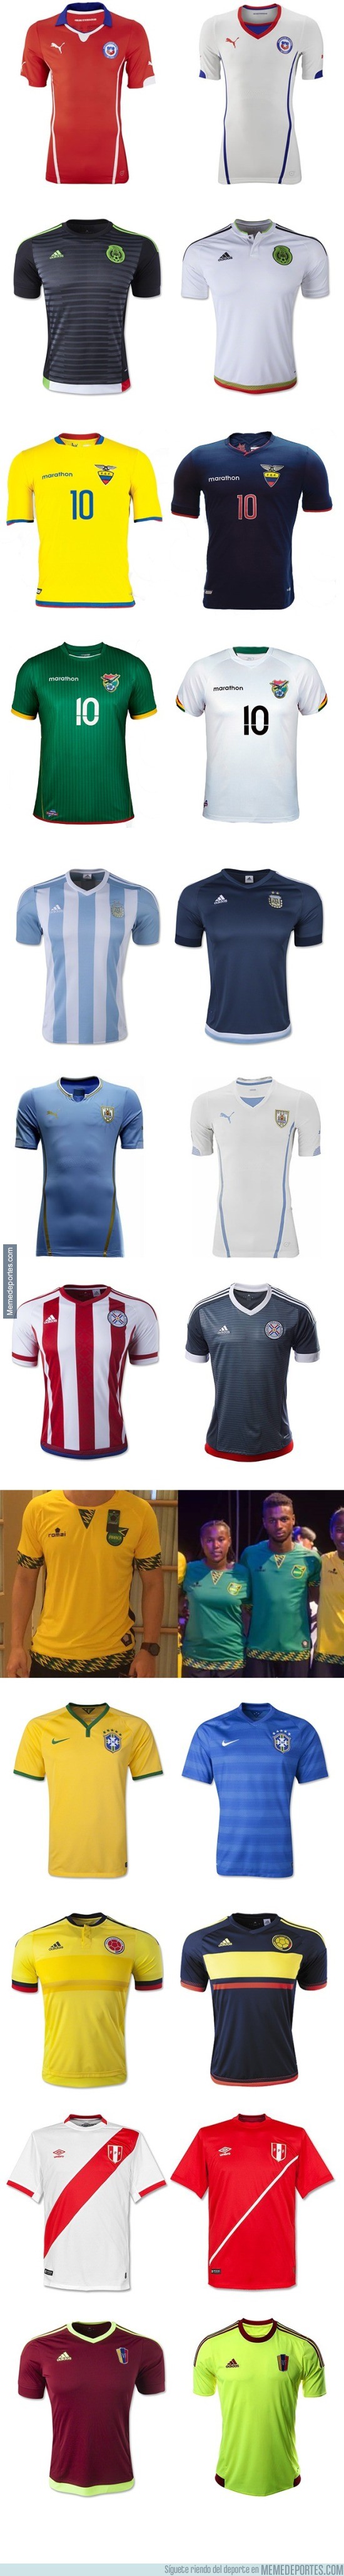 573069 - Los uniformes de las 12 Selecciones para la Copa América Chile 2015